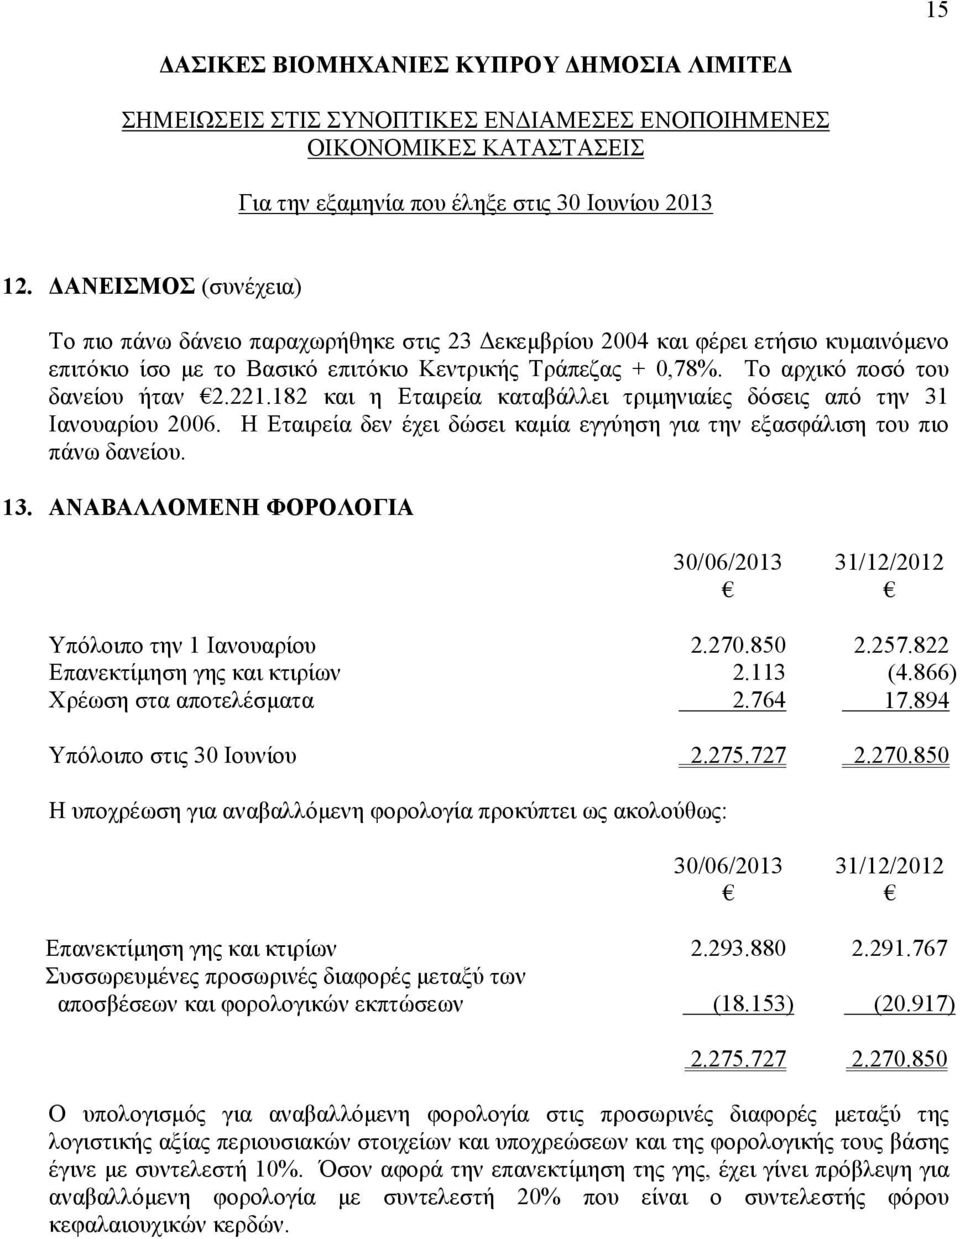 Το αρχικό ποσό του δανείου ήταν 2.221.182 και η Εταιρεία καταβάλλει τριμηνιαίες δόσεις από την 31 Ιανουαρίου 2006. Η Εταιρεία δεν έχει δώσει καμία εγγύηση για την εξασφάλιση του πιο πάνω δανείου. 13.